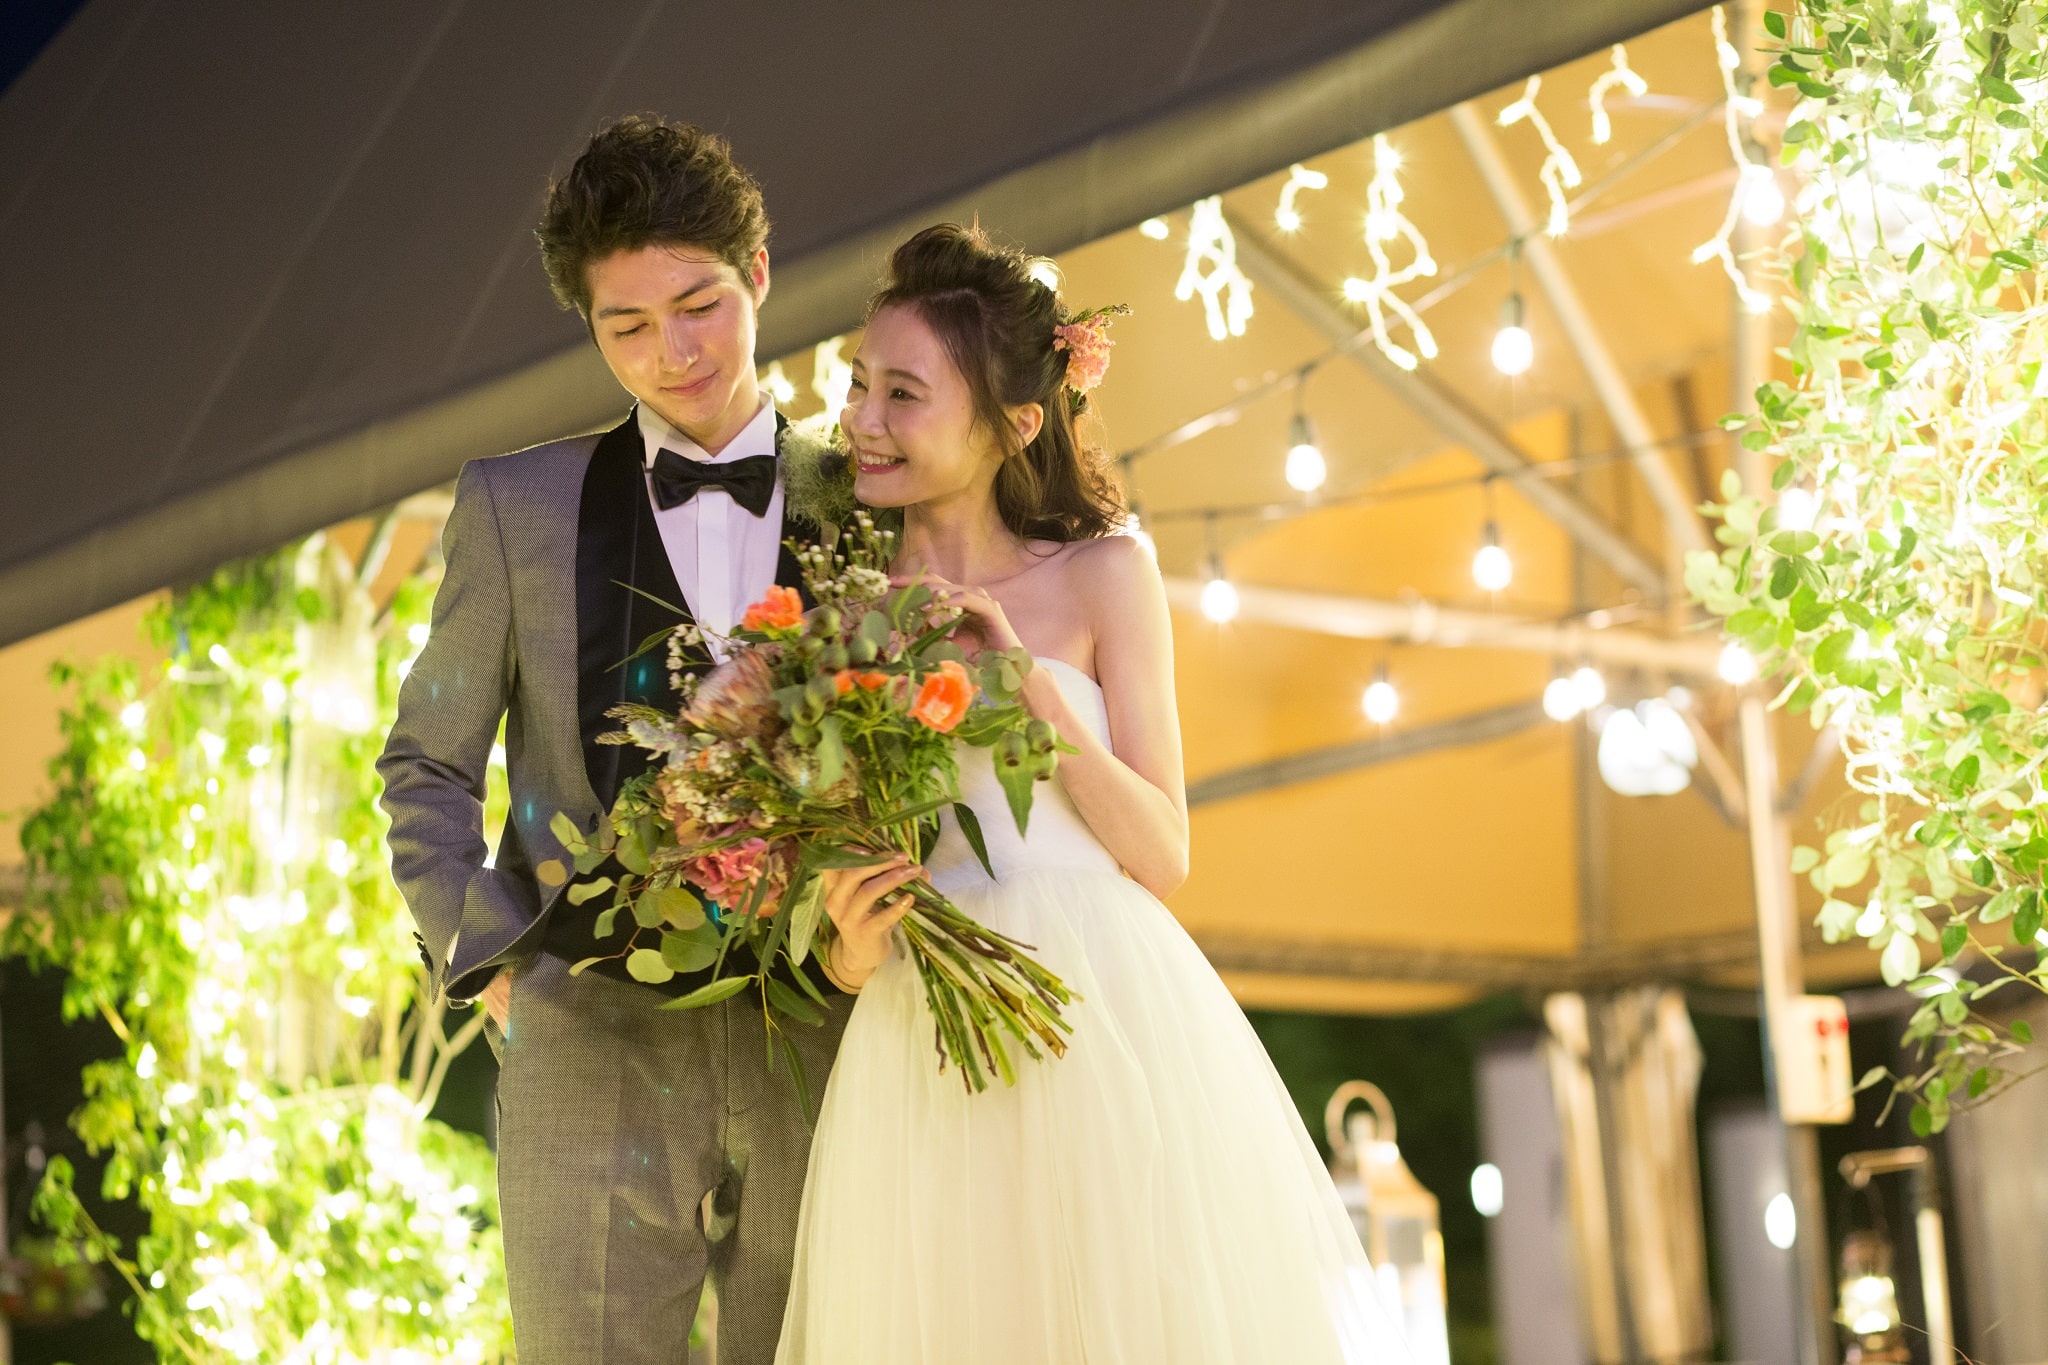 年 名古屋で結婚式の1 5次会を挙げるならおすすめの式場とは 費用相場や当日の流れもご紹介 でら婚